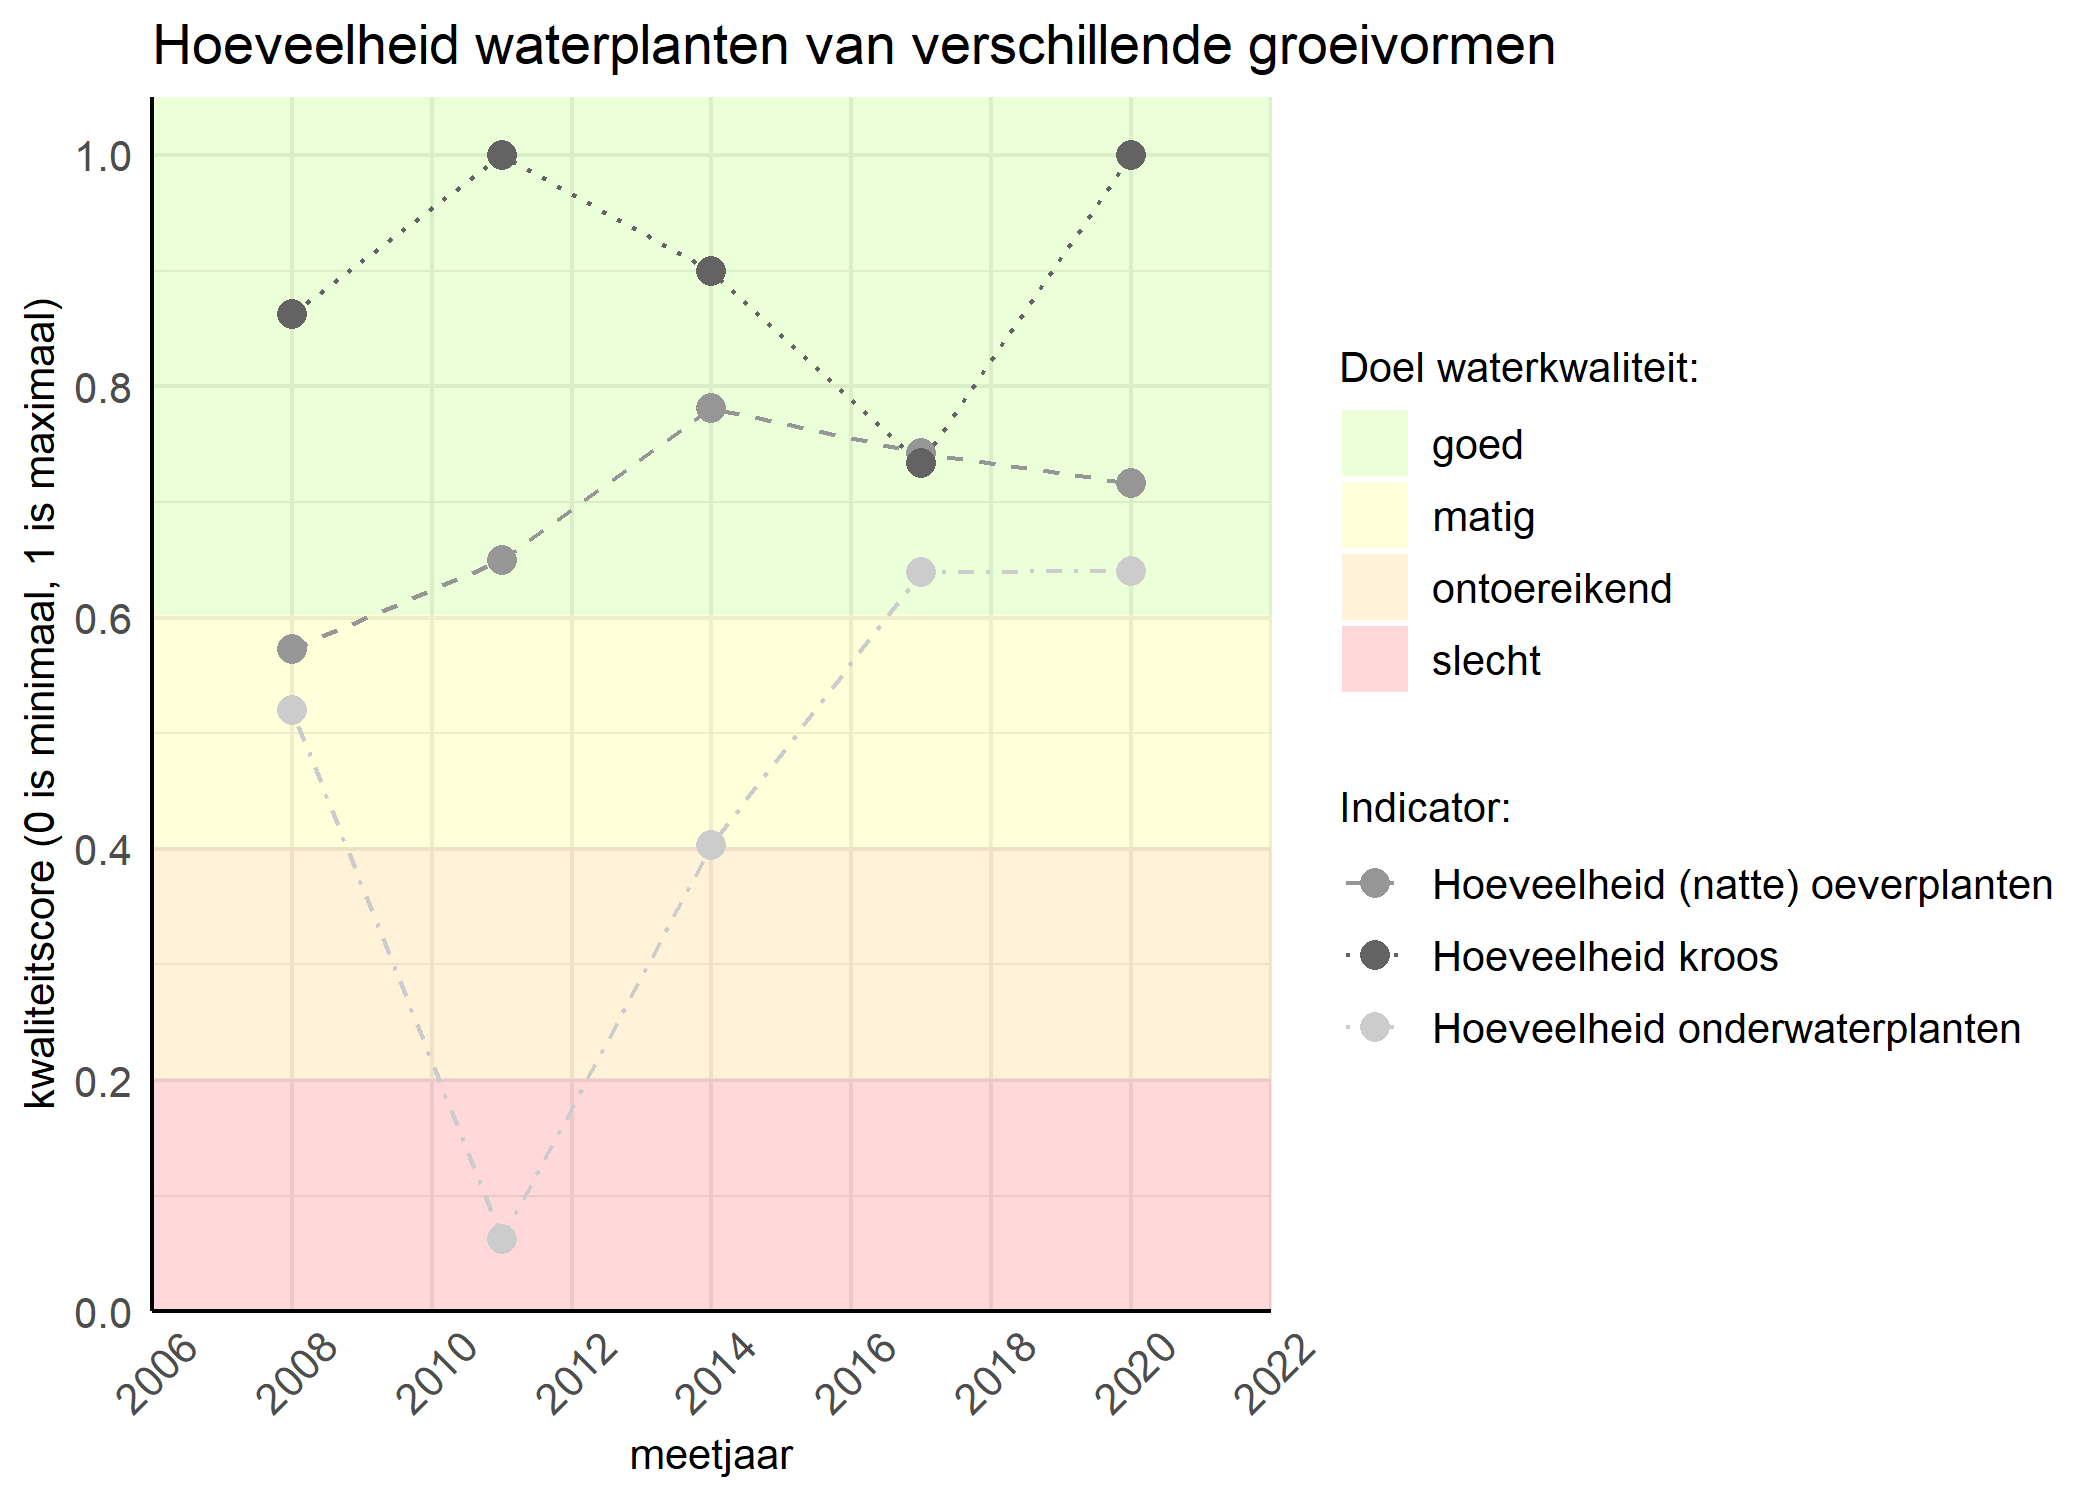 Figure 3: Kwaliteitsscore van de hoeveelheid waterplanten van verschillende groeivormen vergeleken met doelen. De achtergrondkleuren in het figuur zijn het kwaliteitsoordeel en de stippen zijn de kwaliteitsscores per jaar. Als de lijn over de groene achtergrondkleur valt is het doel gehaald.